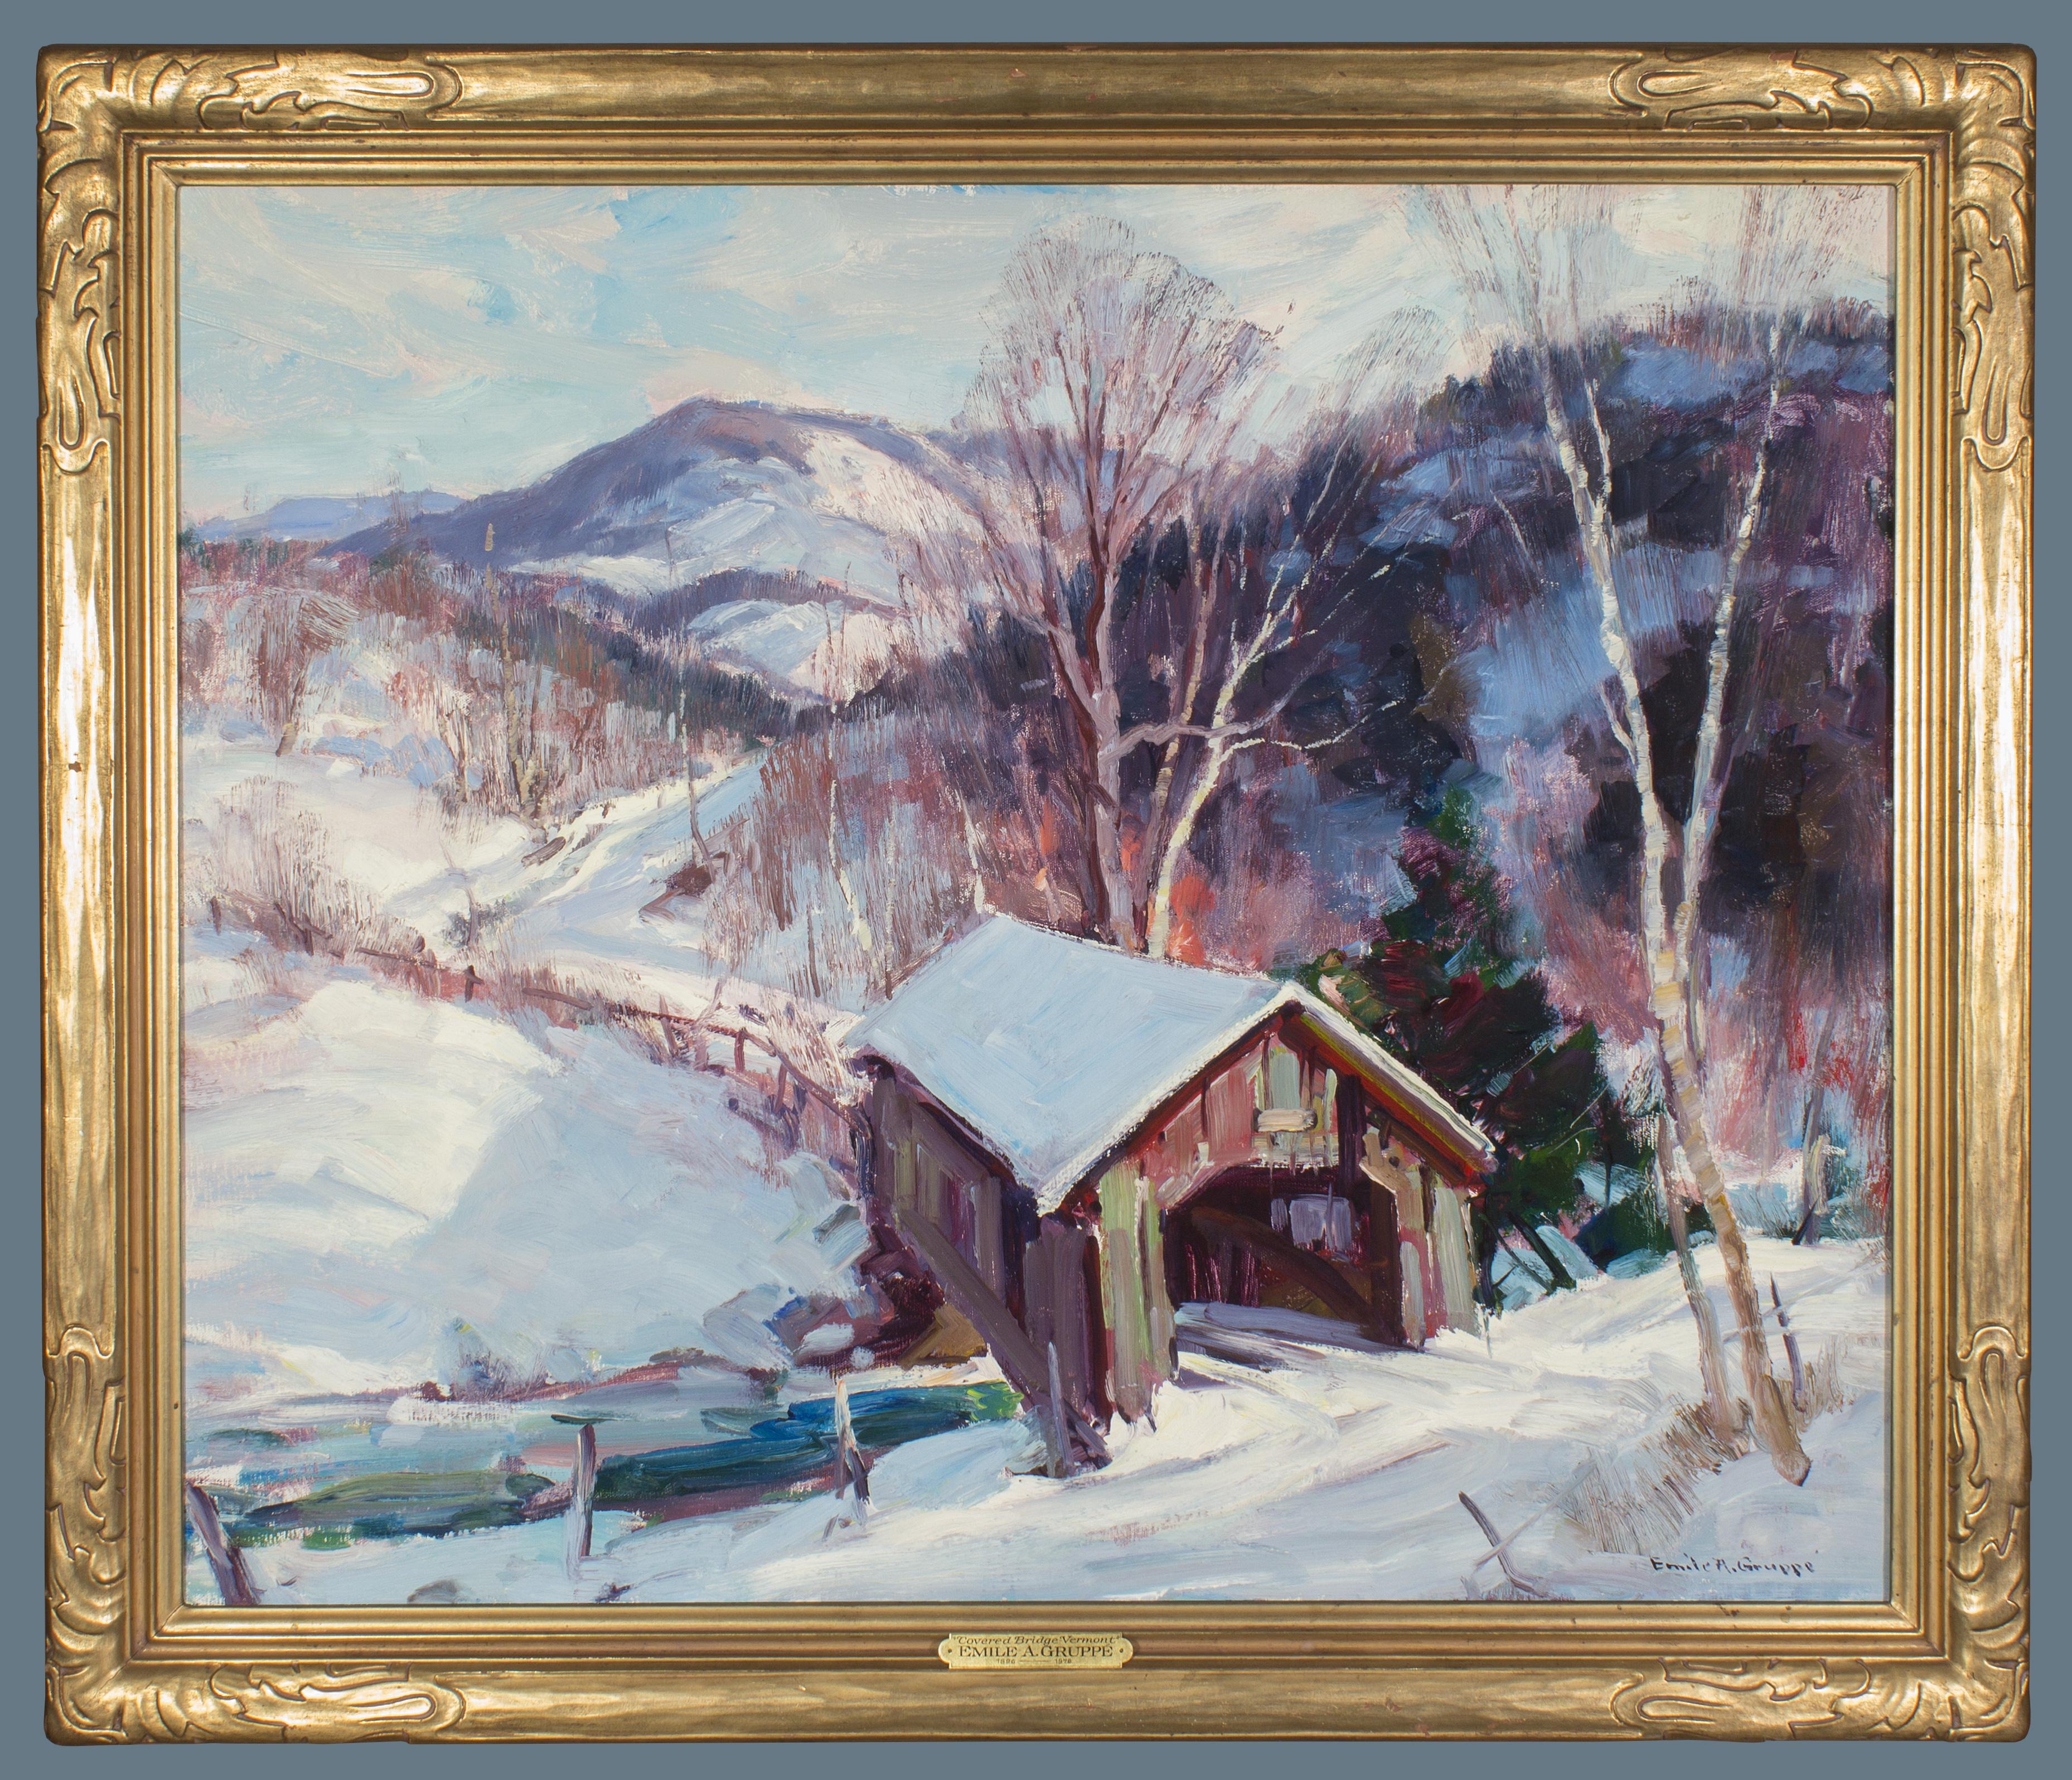 Emile Albert Gruppe Landscape Painting - Covered Bridge in Vermont by Cape Ann Massachusetts Artist Emile Gruppe